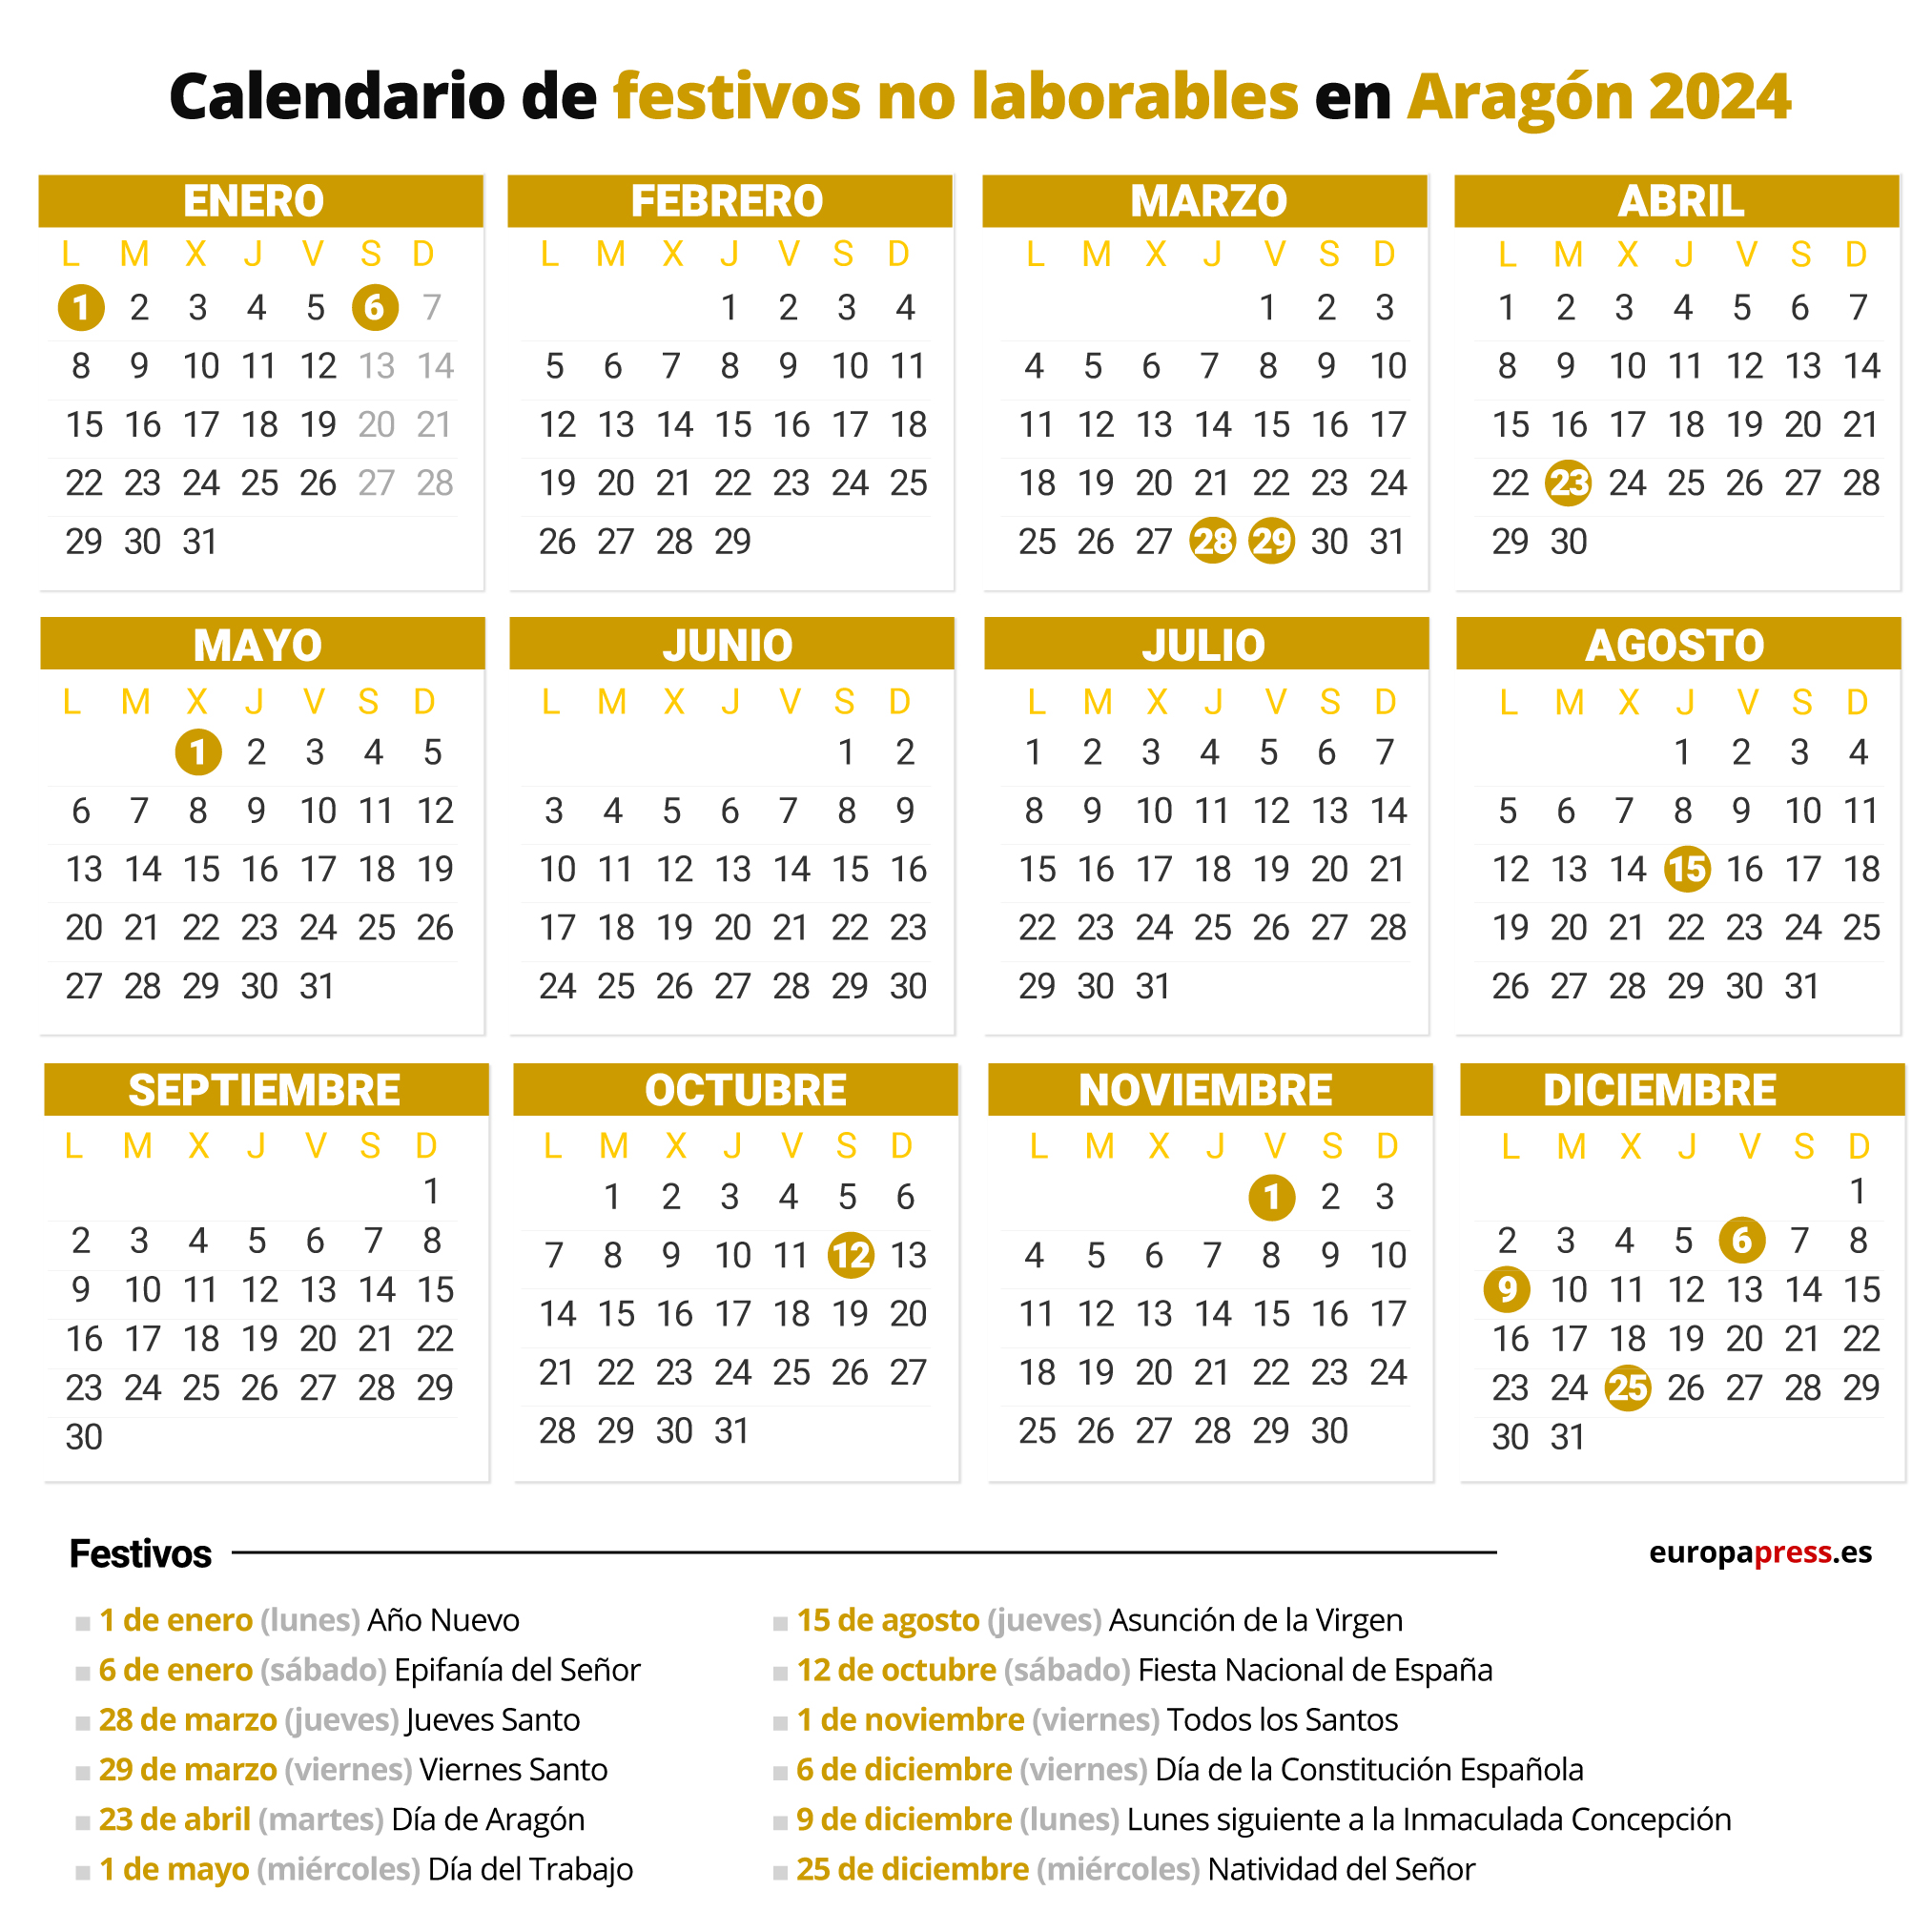 Calendario de festivos no laborables en Aragón para 2024